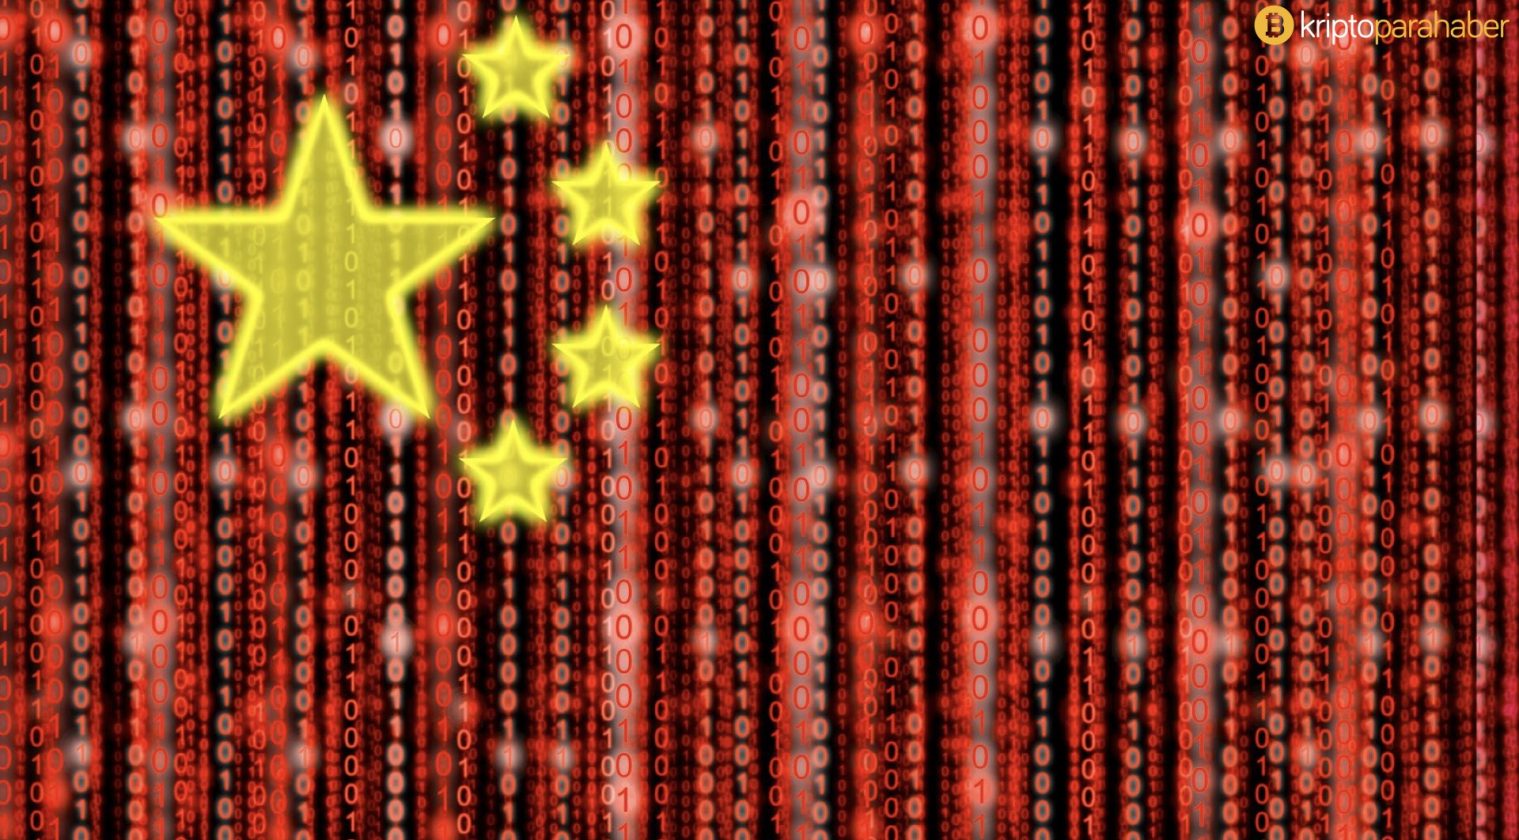 Çin’in dijital para birimi ile 162 milyon dolarlık transfer yapıldı!